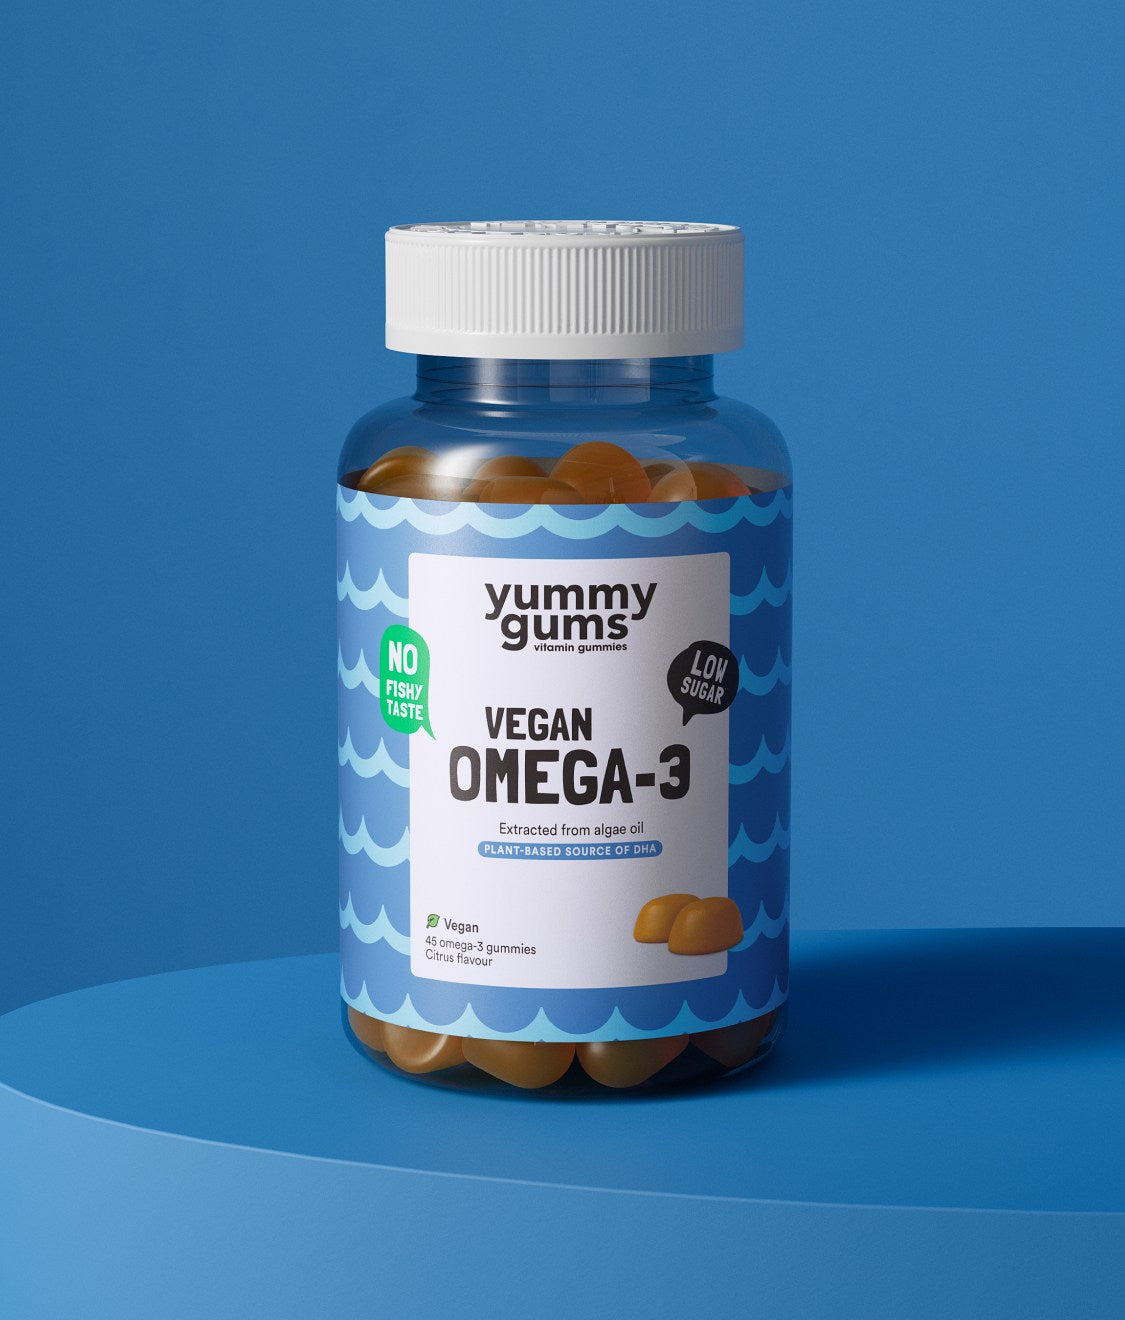 Yummygums Omega-3 - Delicious Vegan Gummy Vitamins sourced from Algae